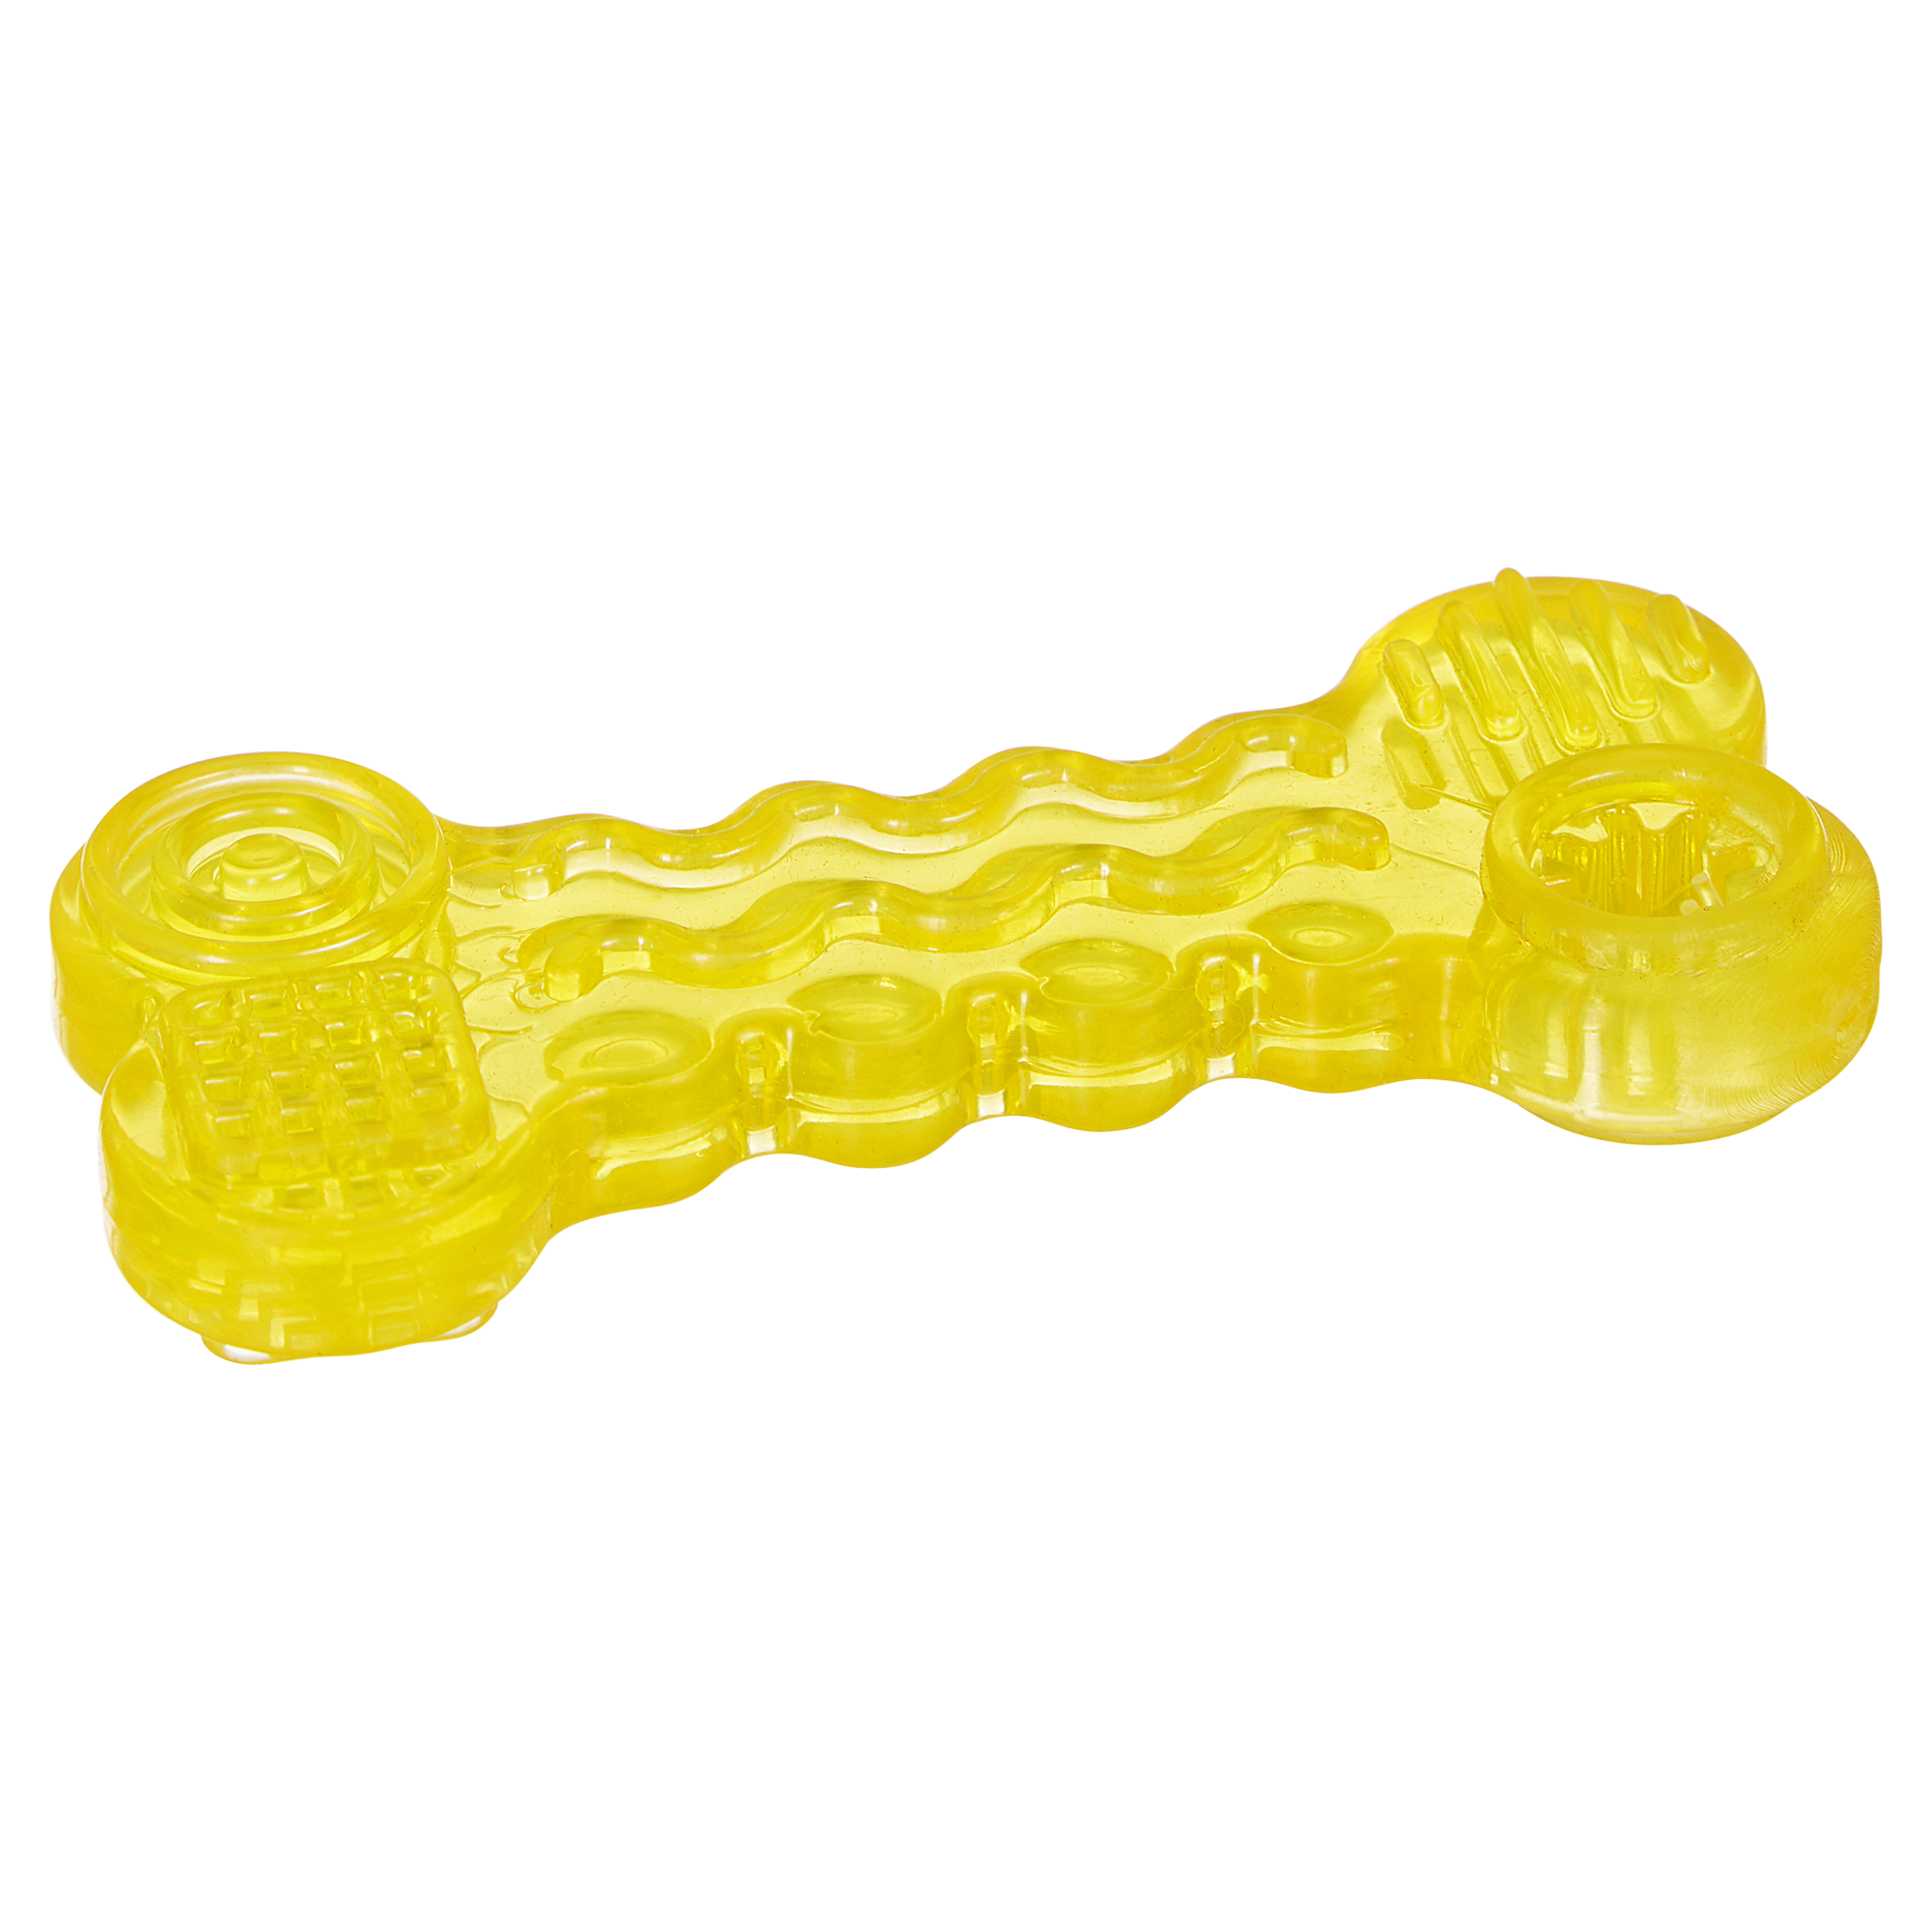 Hundeknochen Gummi 10 cm + product picture